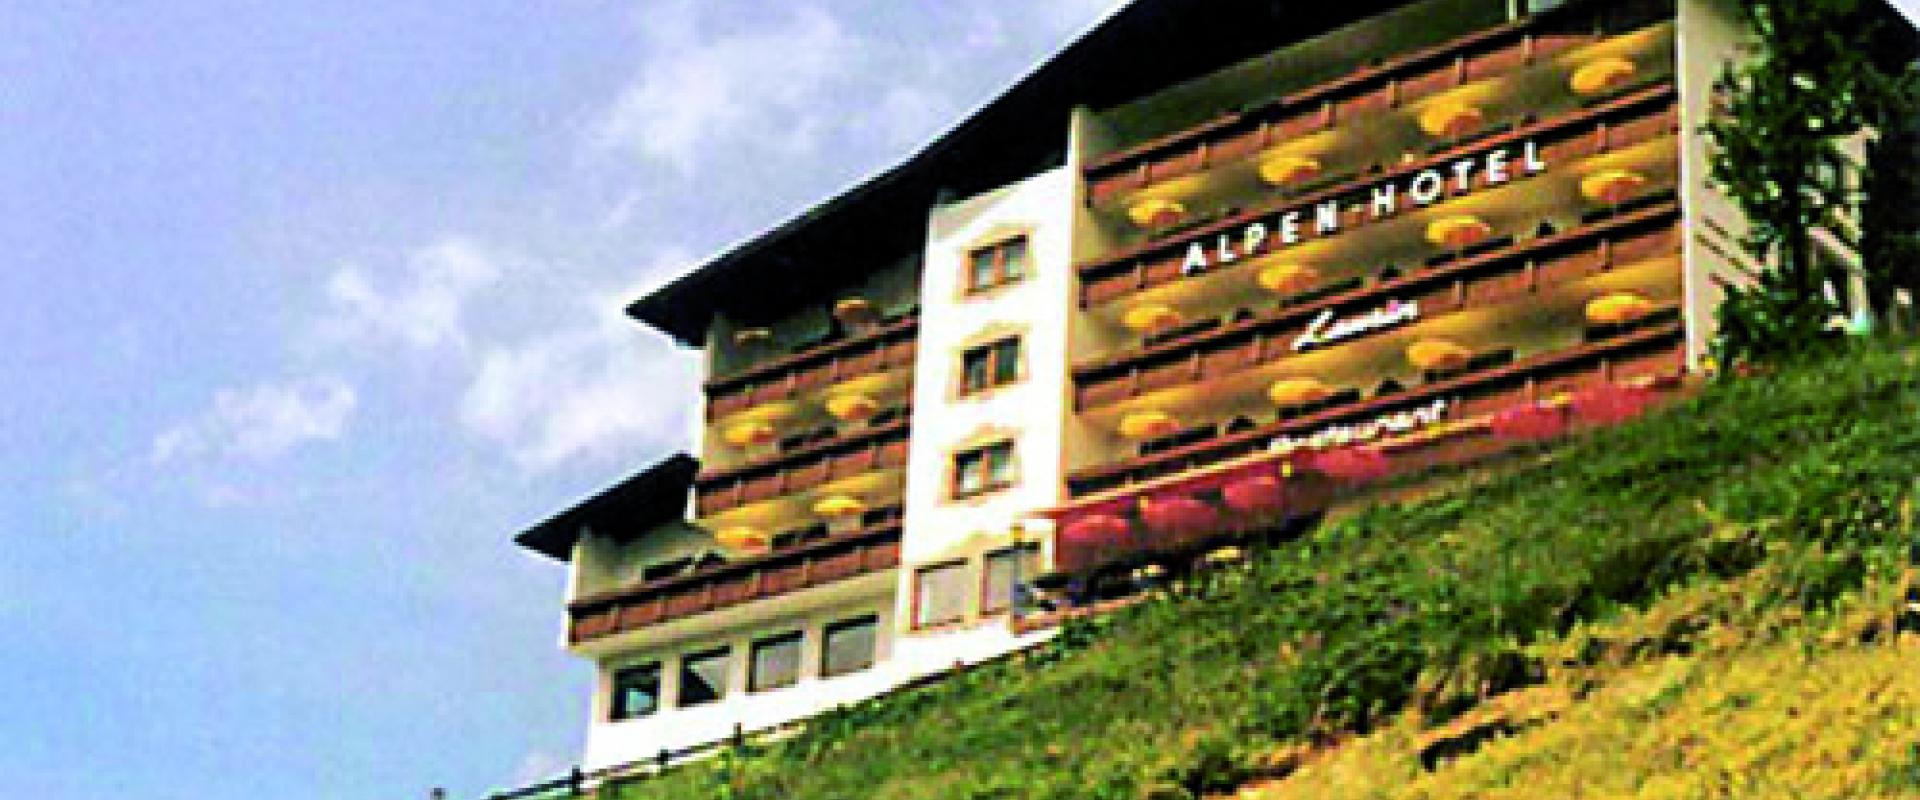 13994 Motorrad Hotel Laurin in Tirol.jpg